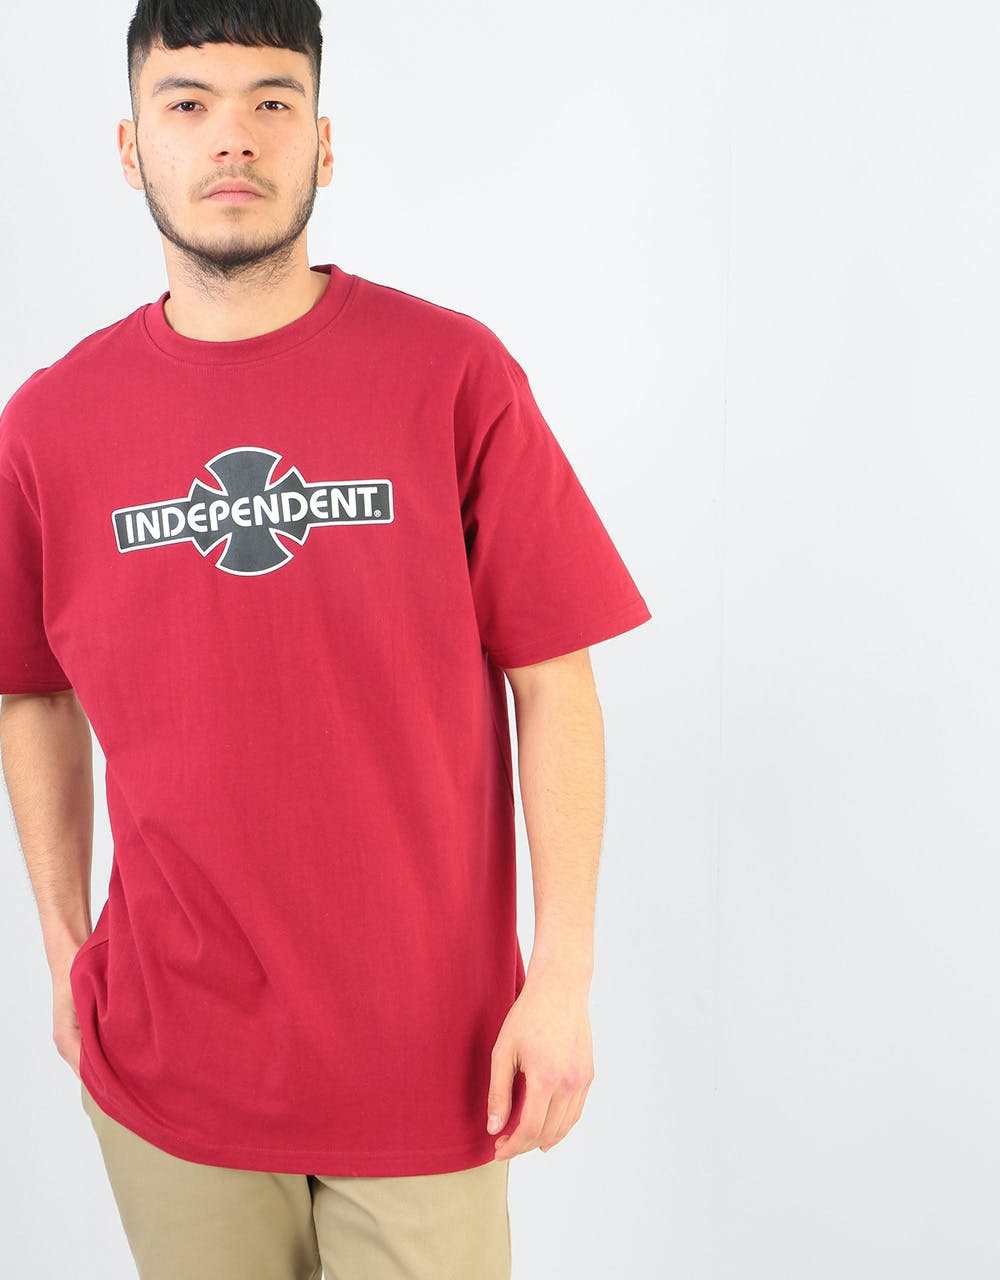 Independent O.G.B.C. T-Shirt - Cardinal Red